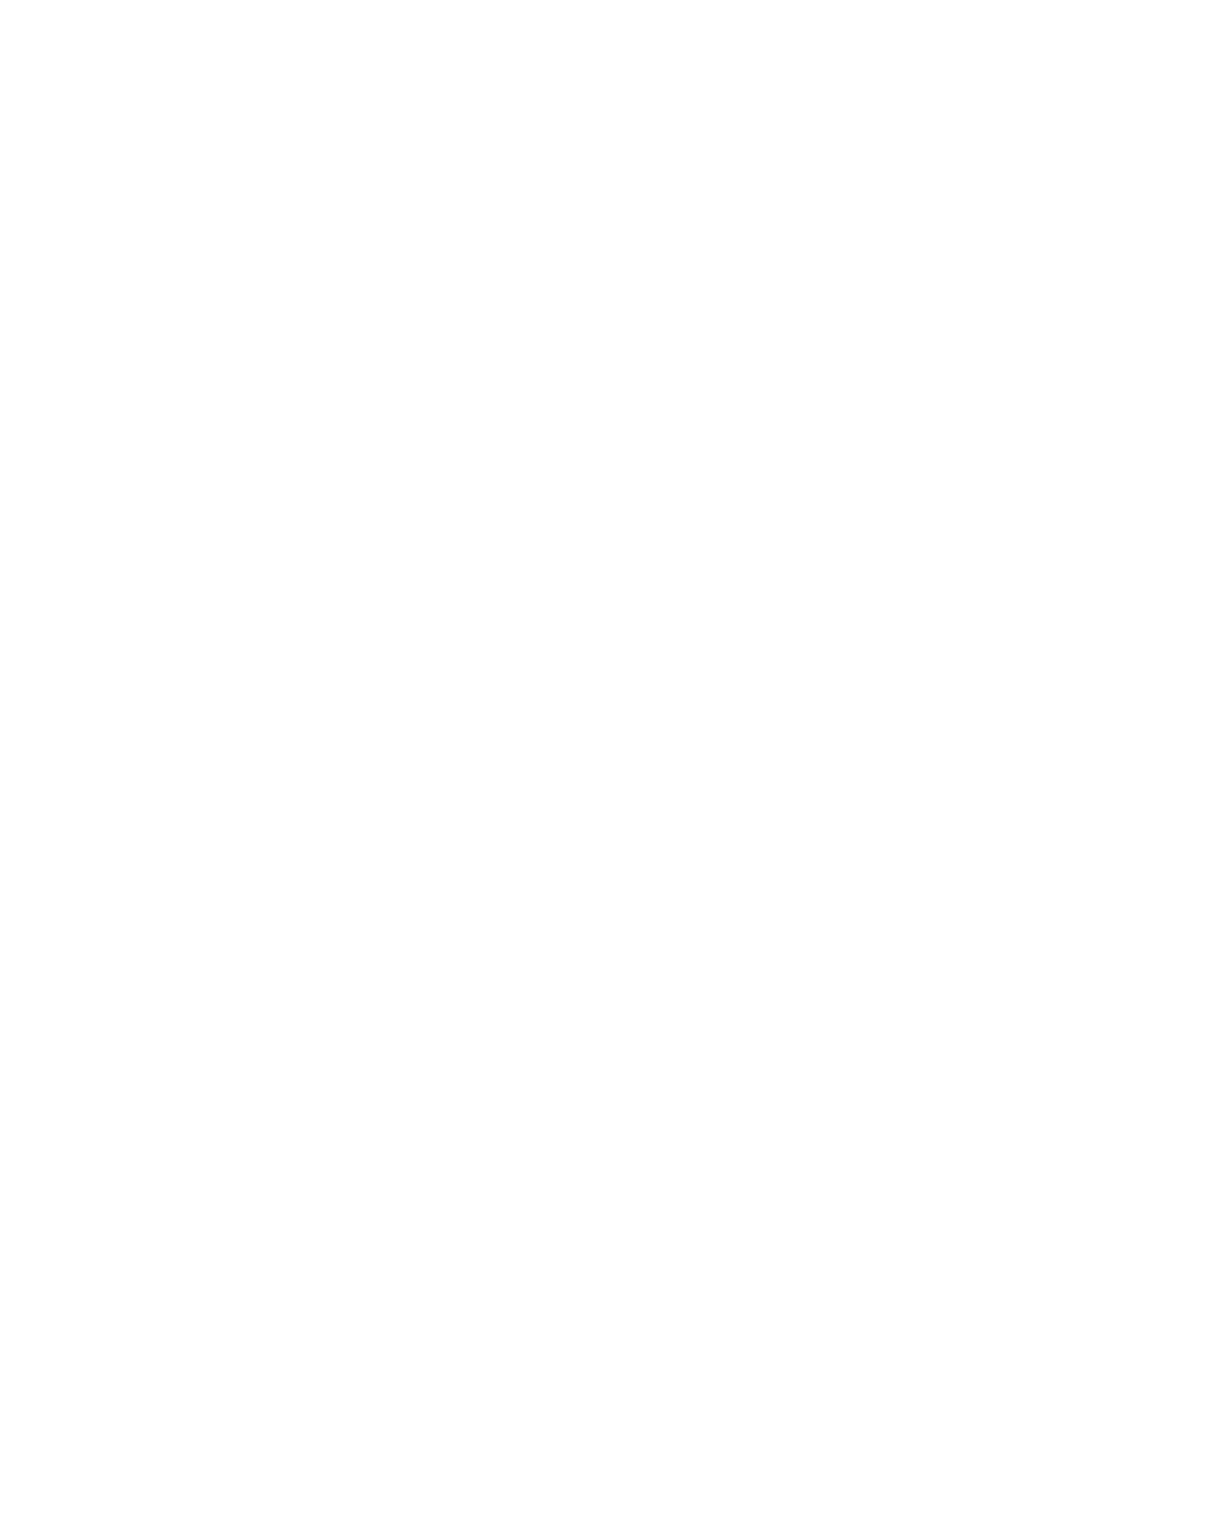 Donaldson logo pour fonds sombres (PNG transparent)